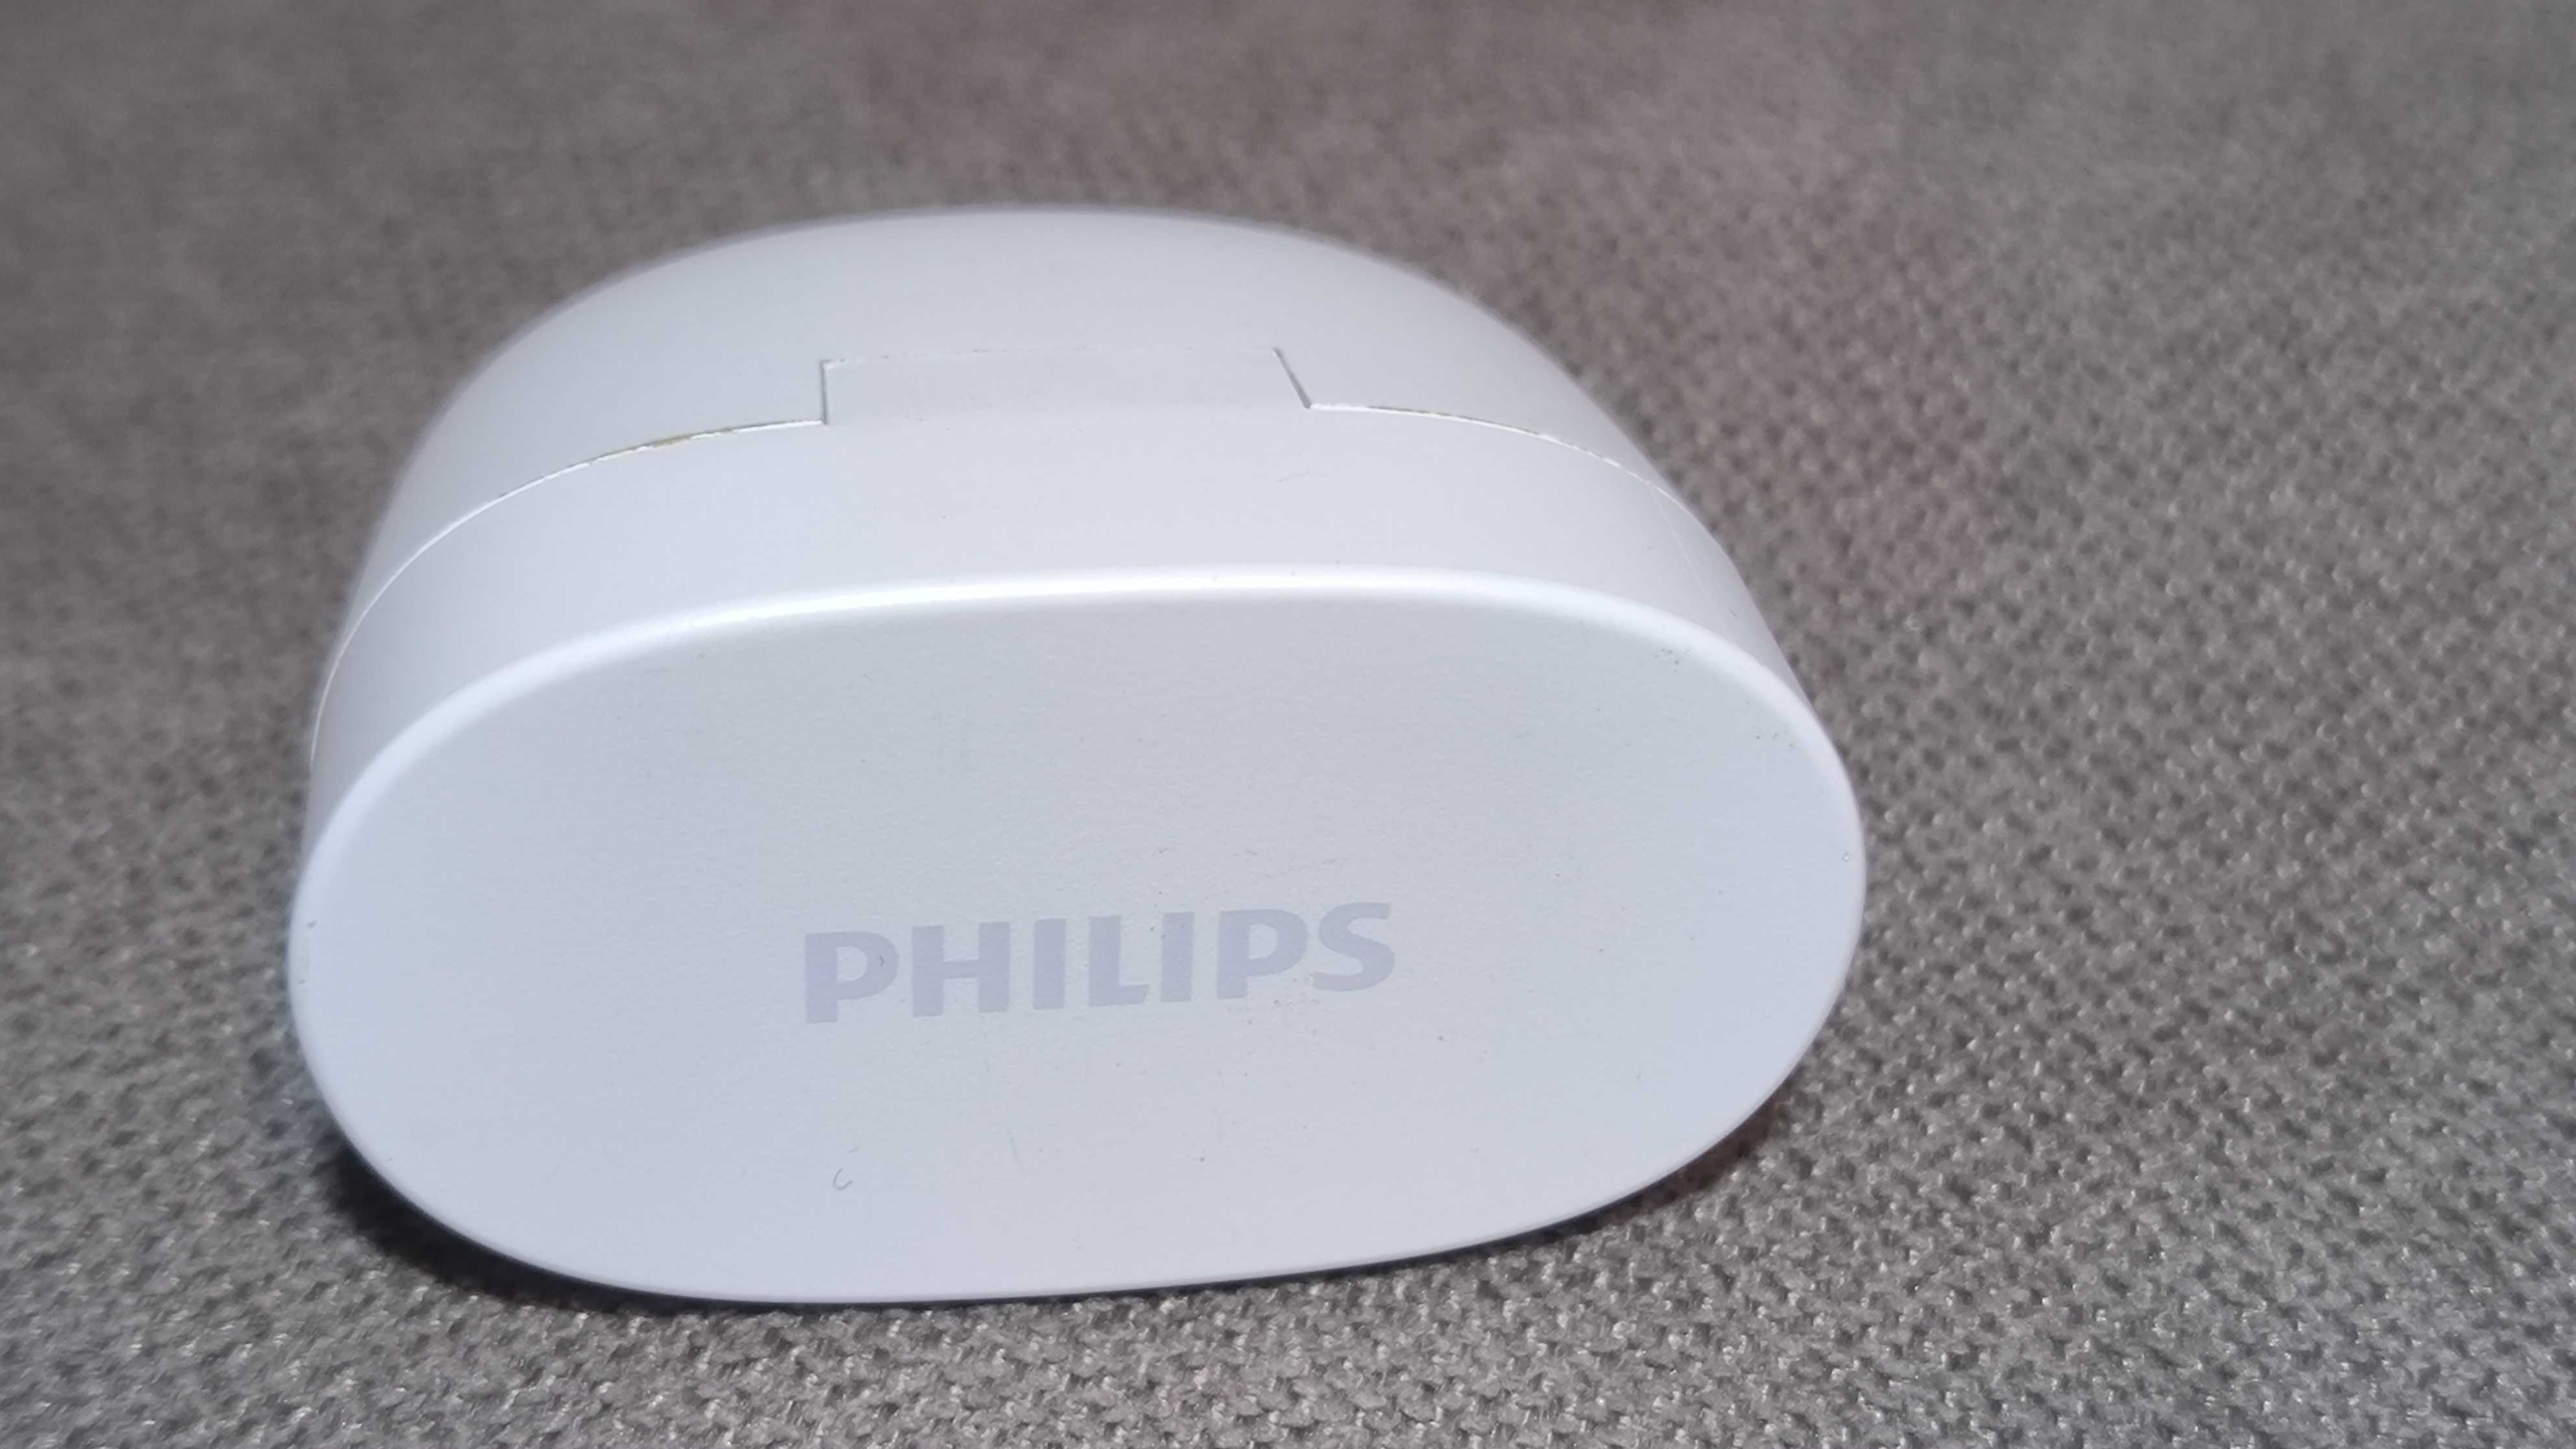 Słuchawki bezprzewodowe Philips TAT2206